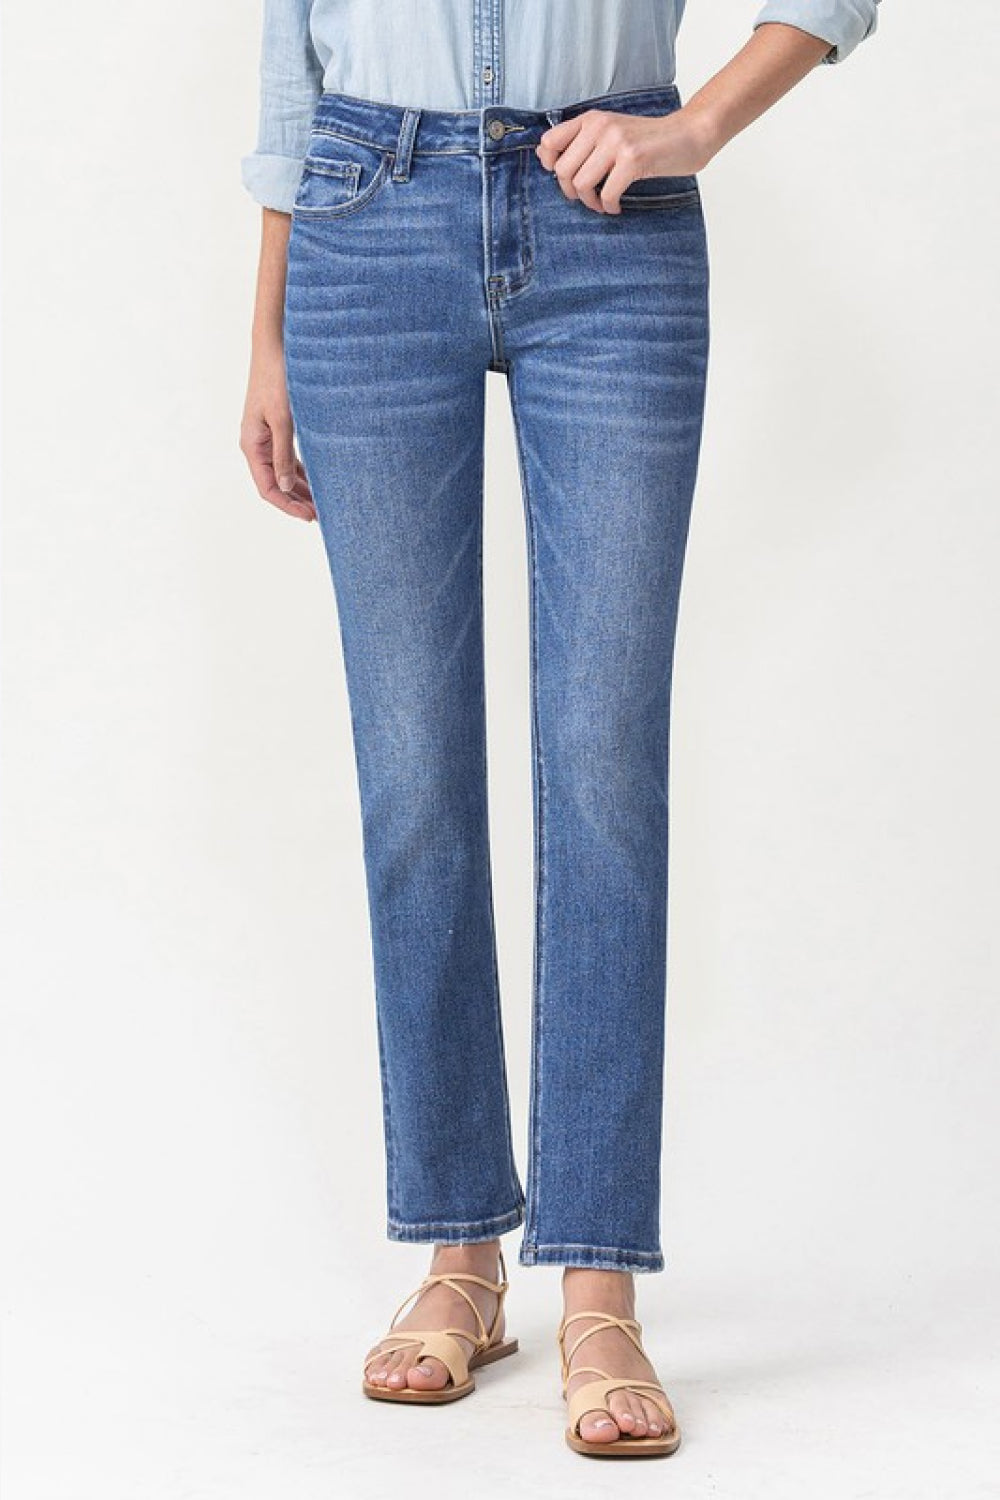 Lovervet Maggie Midrise Blue Denim Straight Leg Jeans LV1025